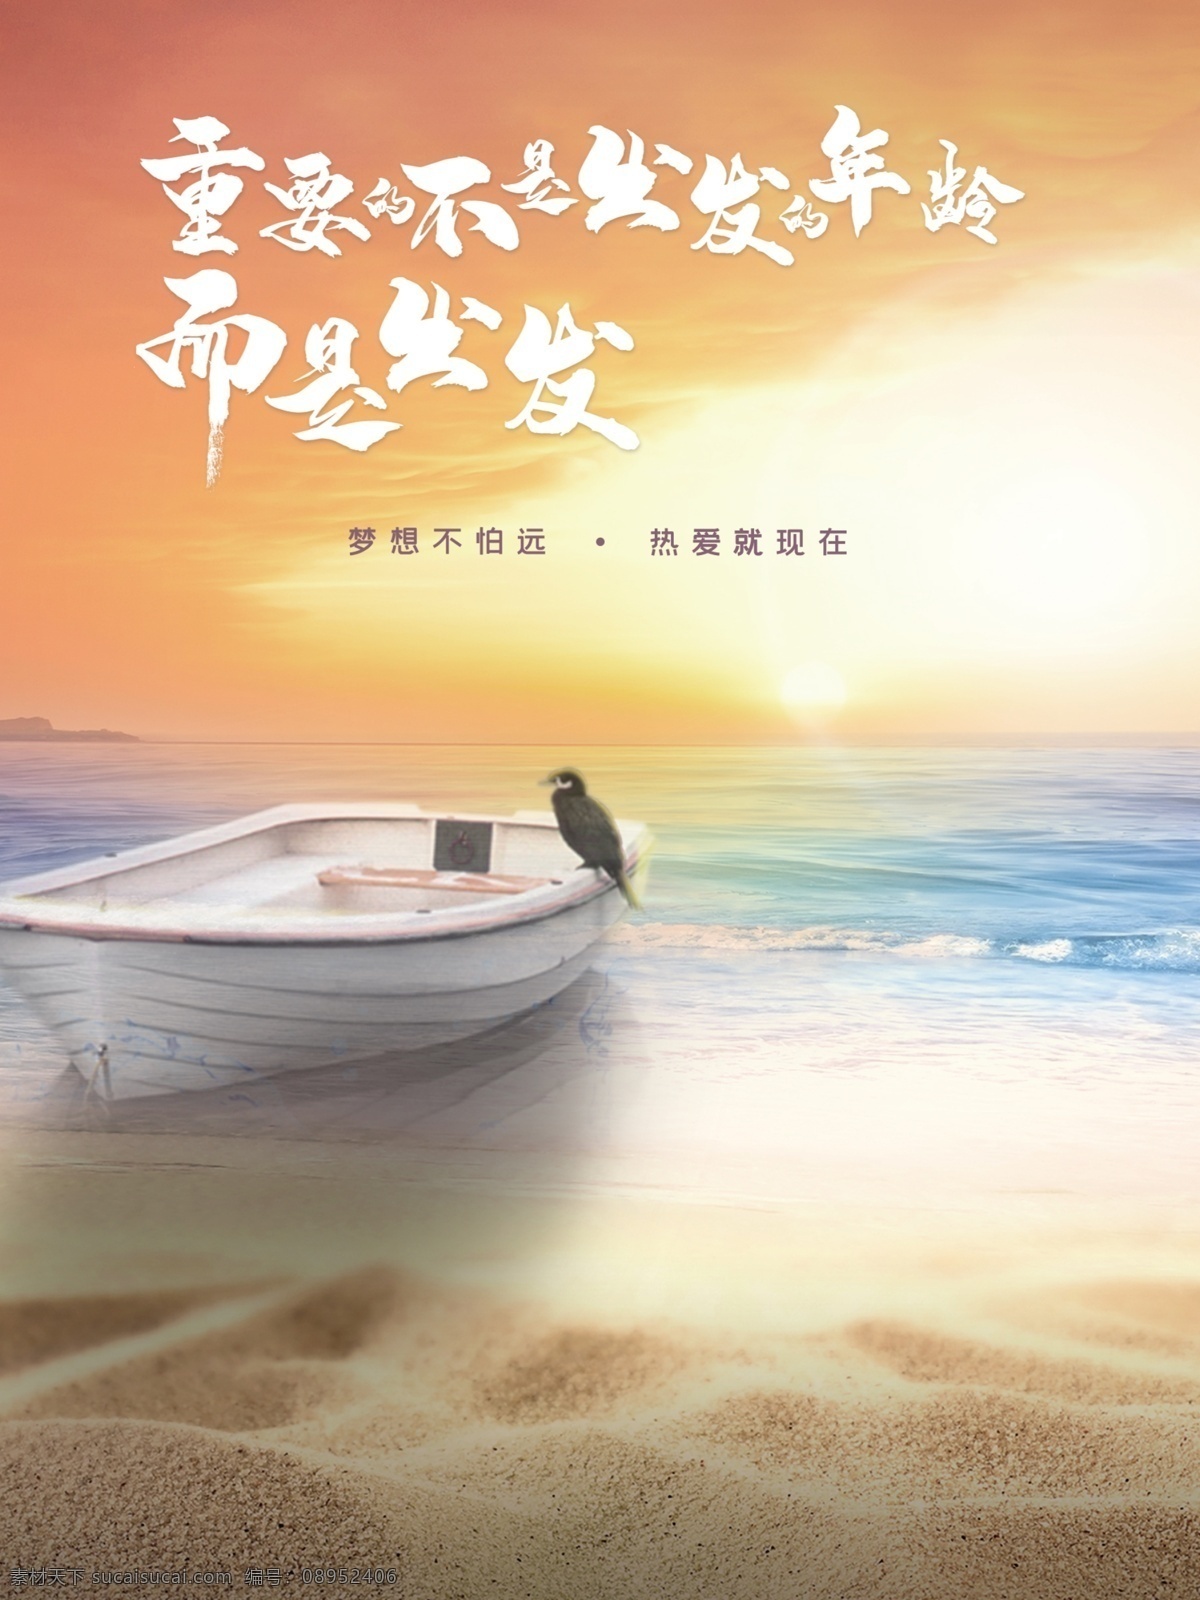 梦想海岸 梦想 海岸 沙滩 夕阳 出发 大海 船 诗意 意境 海报